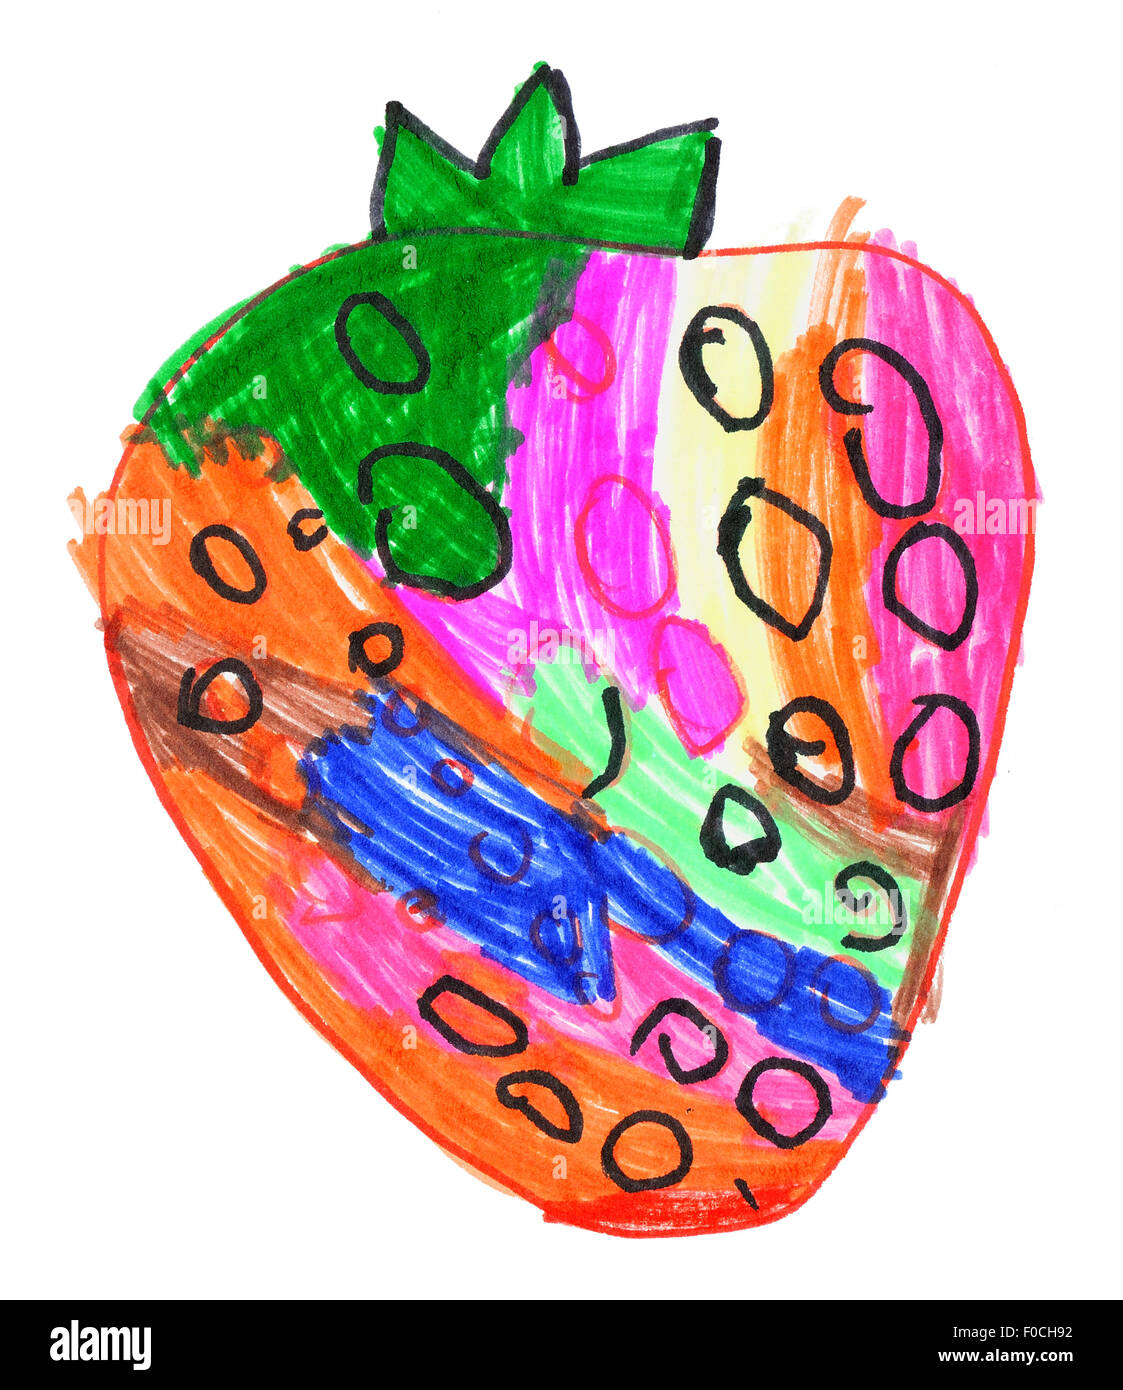 Strawberry. dessin d'enfant isolé sur le papier. Banque D'Images